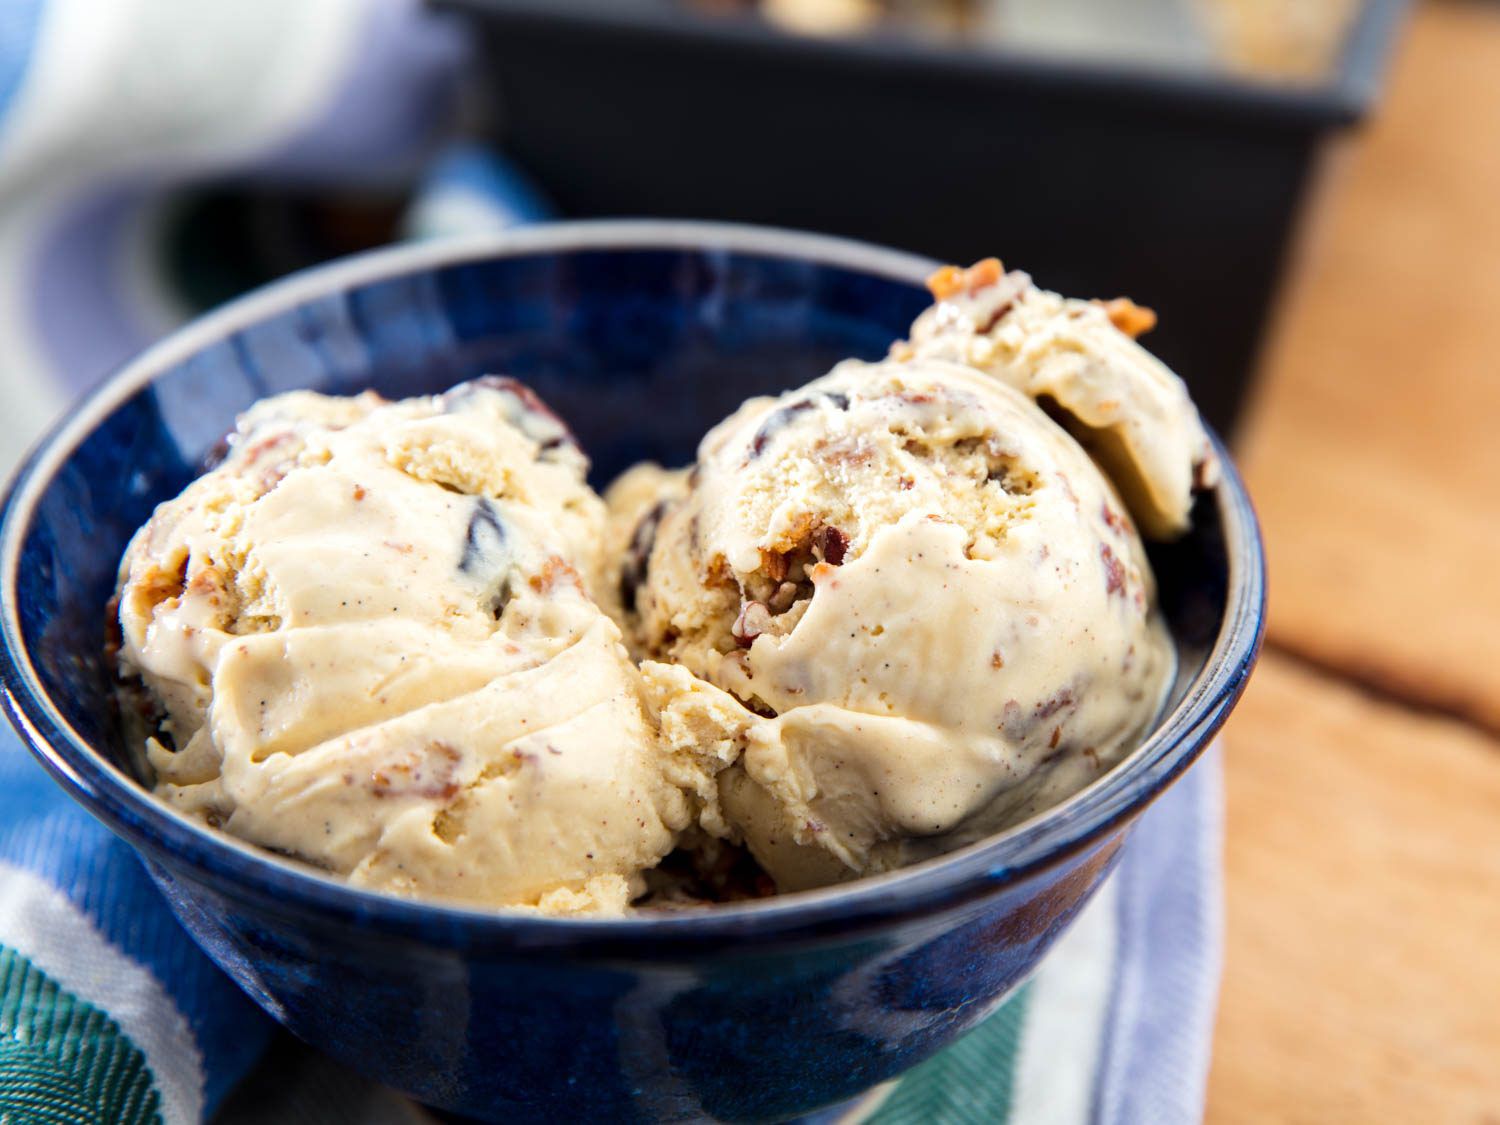 两勺燕麦饼干冰淇淋放在蓝碗里